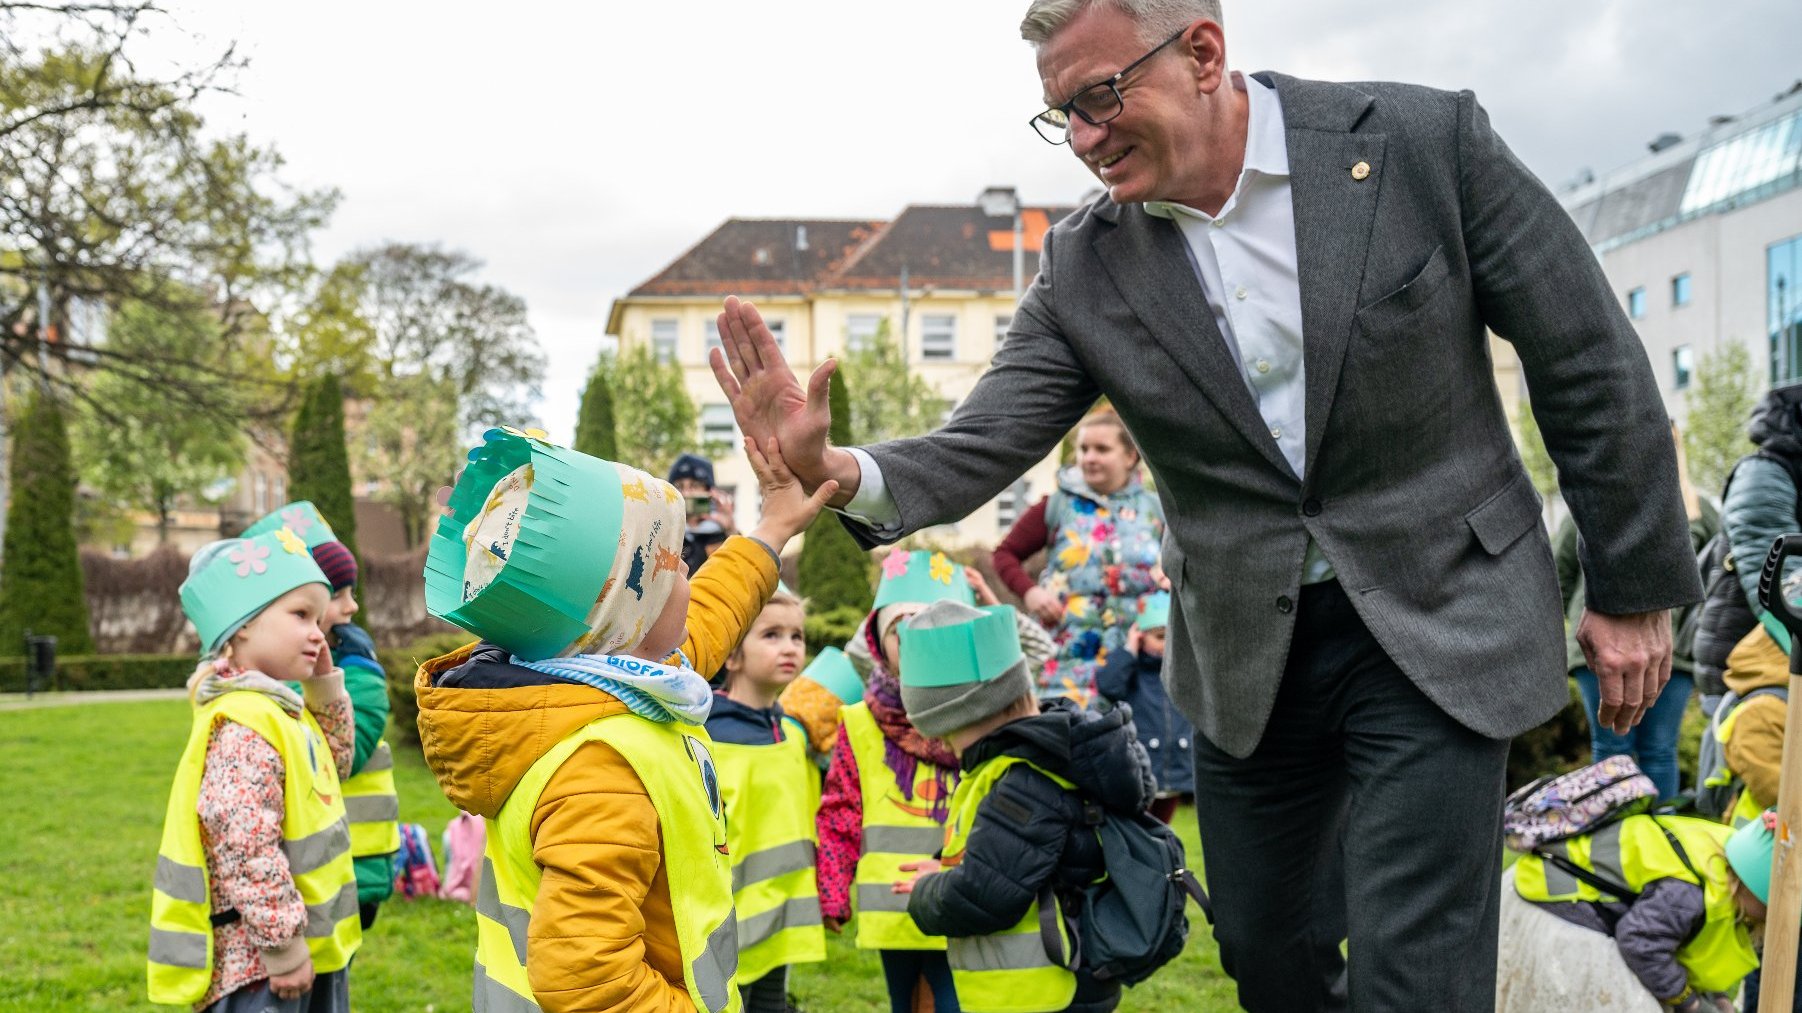 Galeria zdjęć przedstawia prezydenta Poznania Jacka Jaśkowiaka, który sadzi drzewo wspólnie z dziećmi z przedszkola "Cytryna".